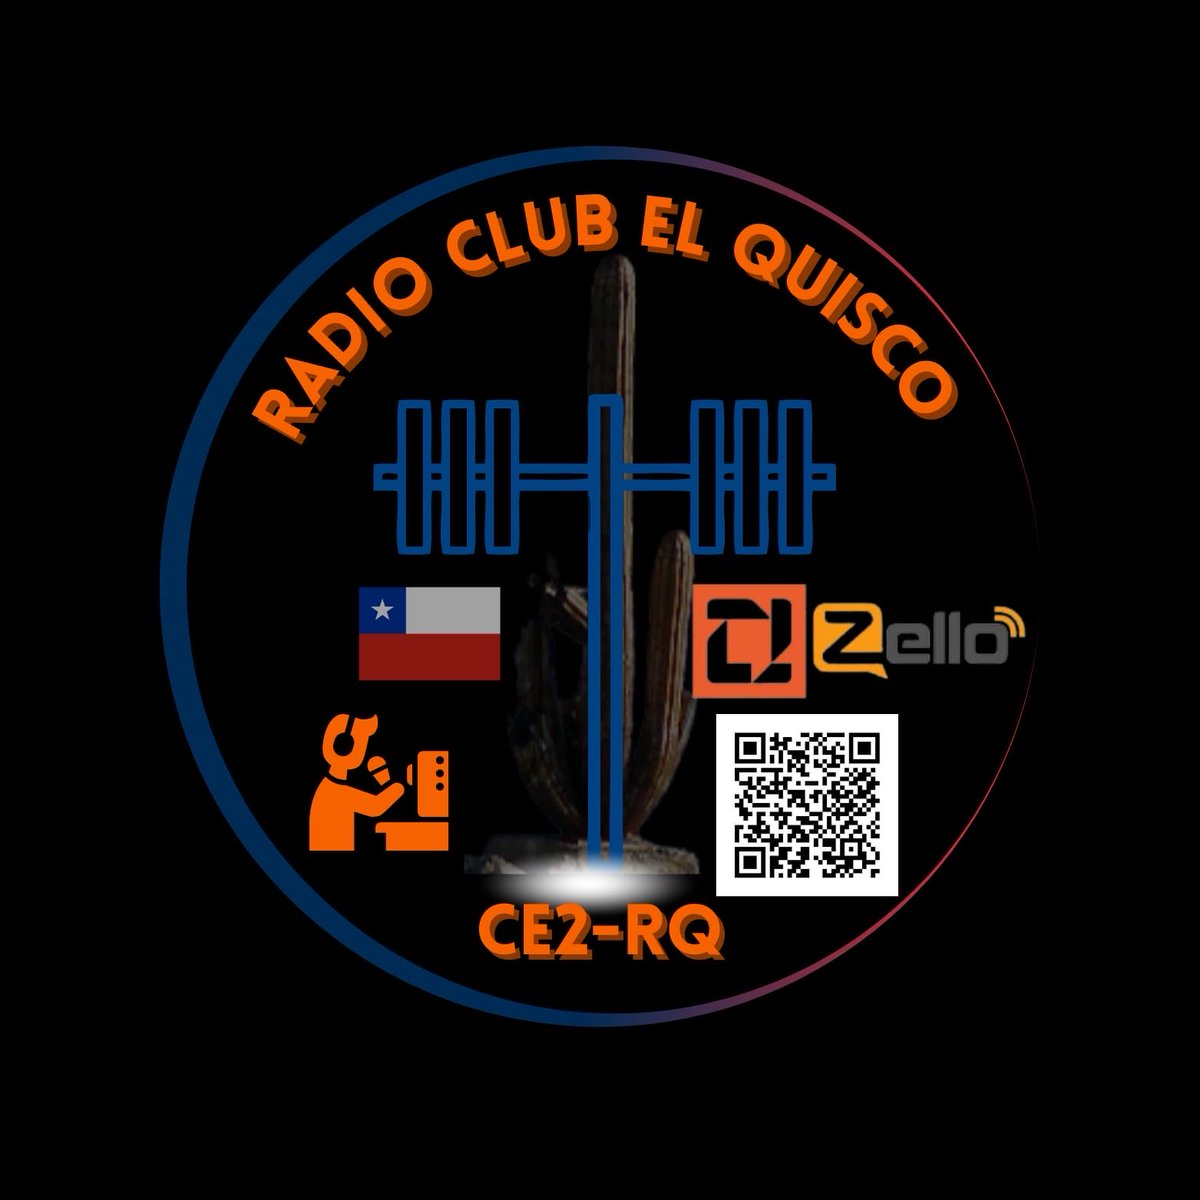 Todos los colegas radioaficionados nacionales e internacionales invitados al primer ejercicio de la semana a las 20.00 horas en la Frecuencia 146.550 para la comuna de El Quisco,alrededores y a través de la plataforma ZELLO como CE2RQ EL QUISCO.💪💪🇨🇱🇨🇱🏋️‍♀️🏋️‍♀️🏋️‍♀️🏋️‍♀️🏋️‍♀️🇨🇱🇨🇱🇨🇱